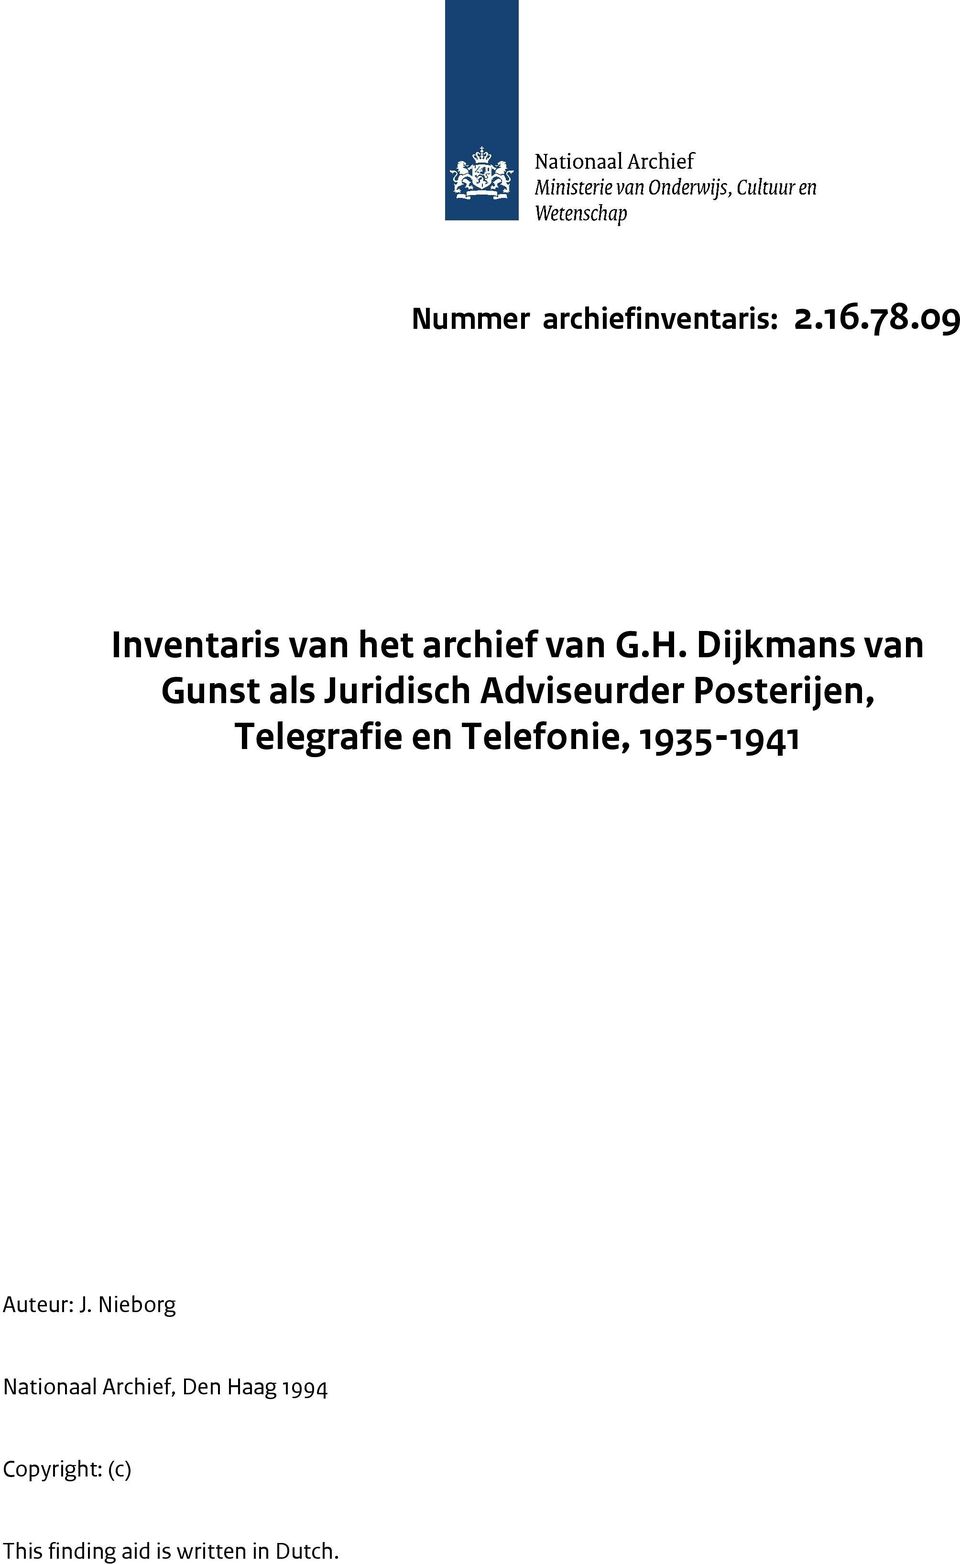 Dijkmans van Gunst als Juridisch Adviseurder Posterijen, Telegrafie